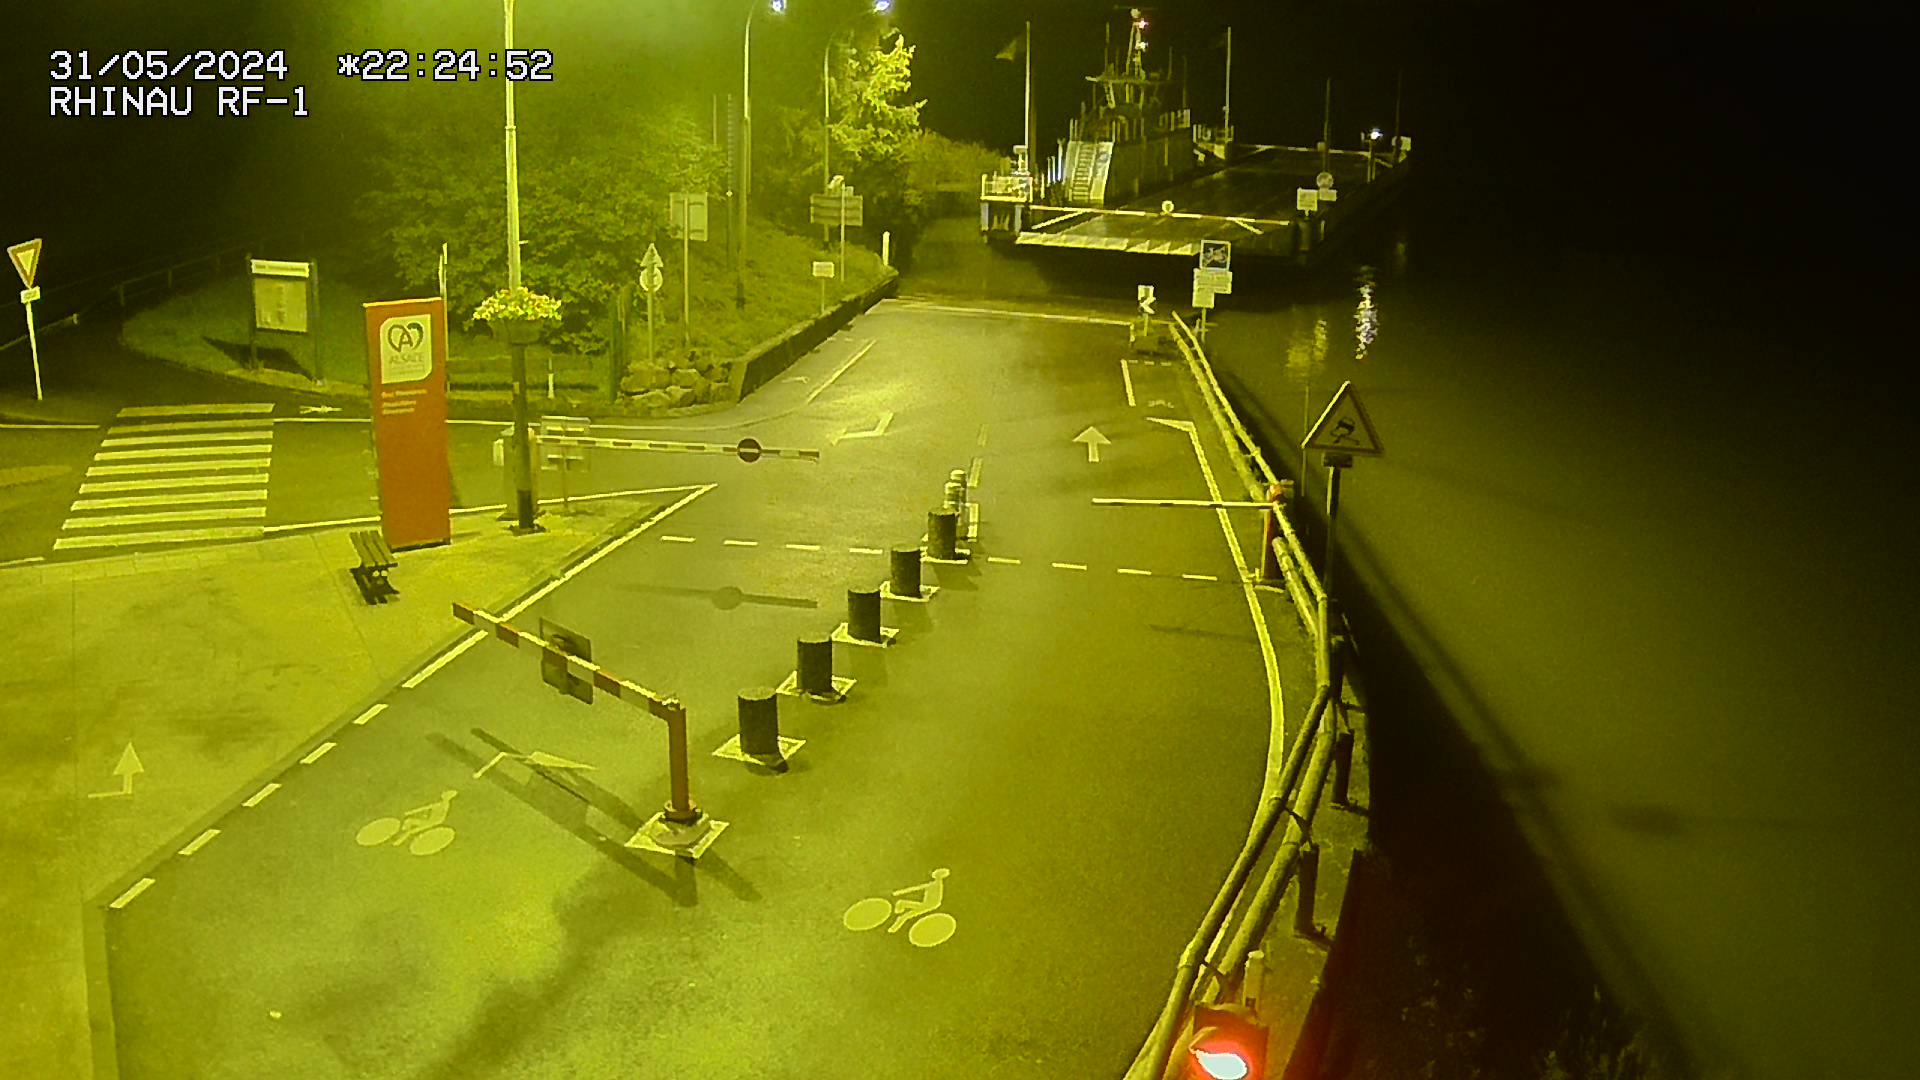 Webcam du bac de Rhinau-Kappel. Vue avant le quai d'embarquement du côté français, à la jonction entre la D20 et la D5. Vue orientée vers Benfeld